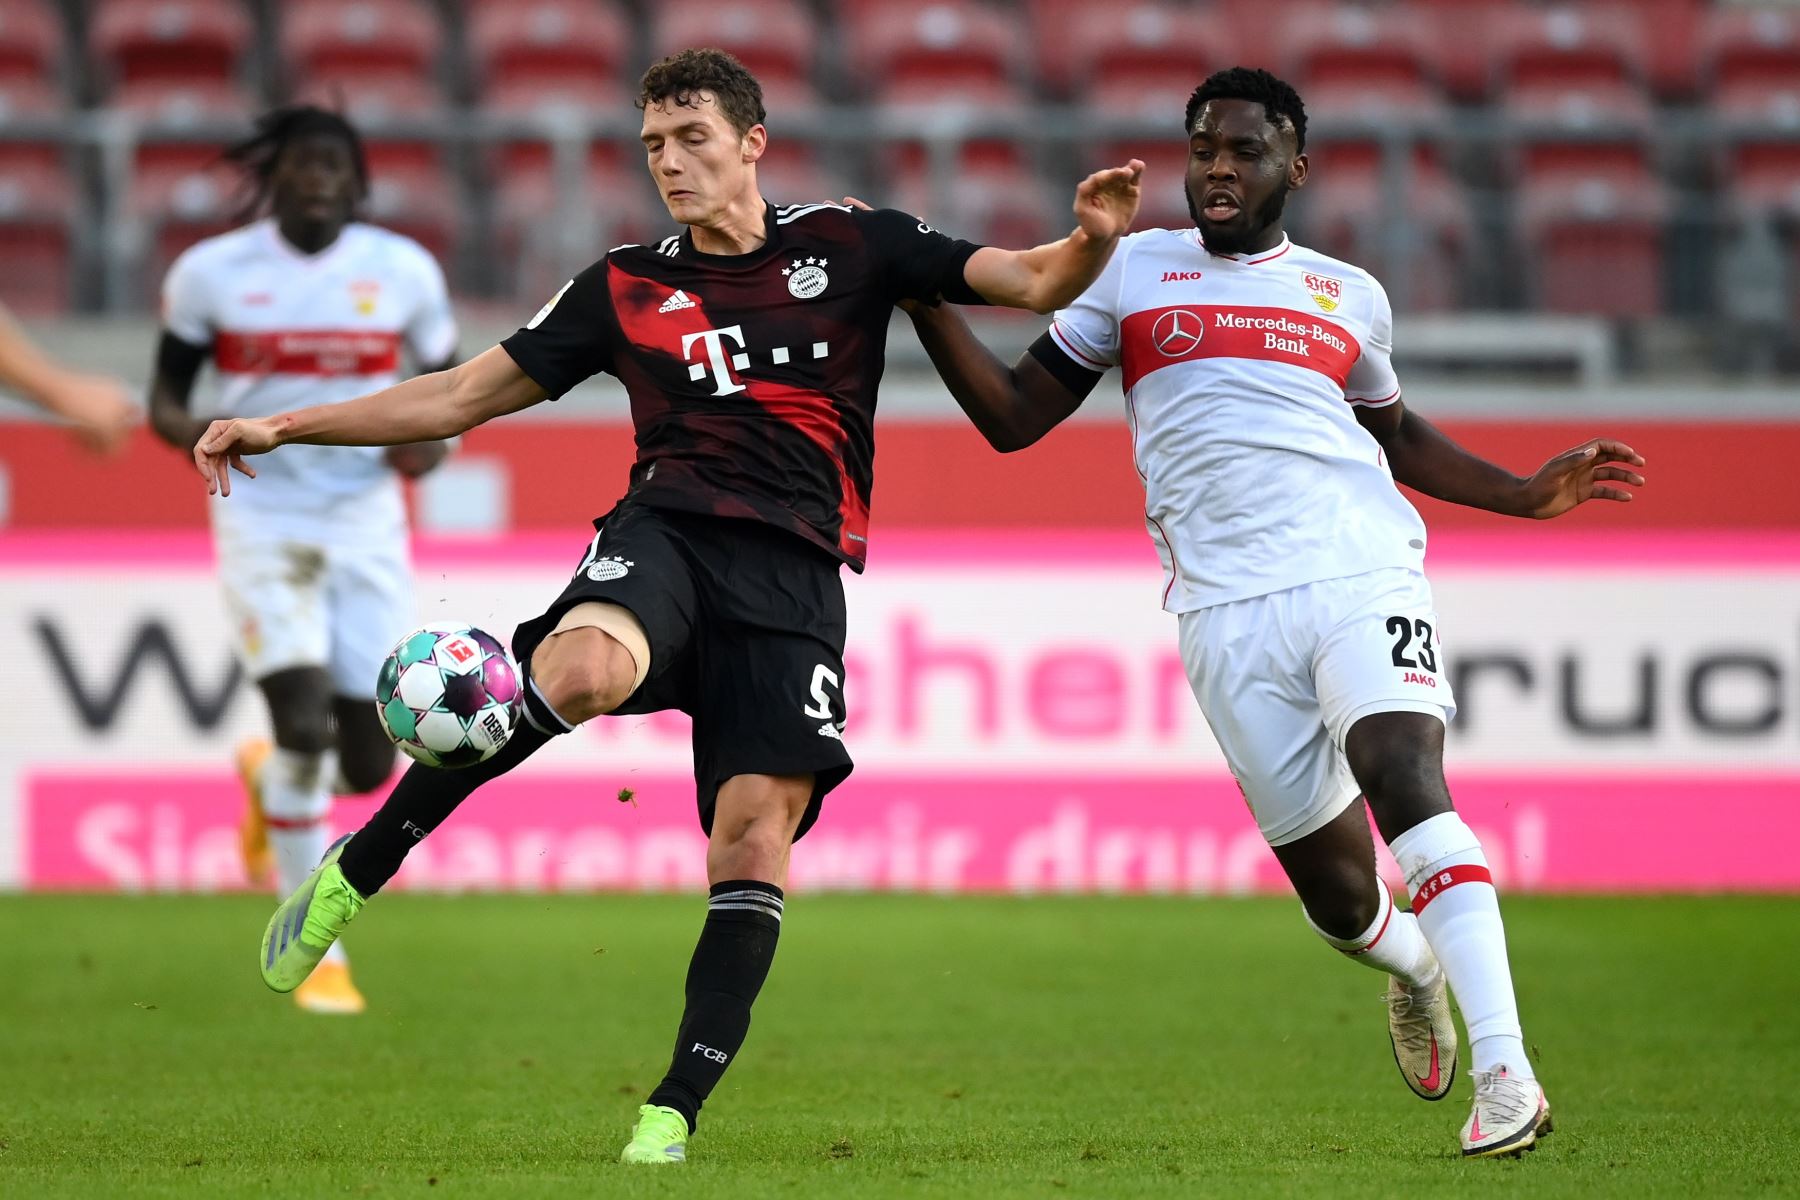 Orel Mangala de Stuttgart en acción contra Benjamin Pavard del Bayern Munich durante el partido de fútbol de la Bundesliga alemana. Foto: EFE